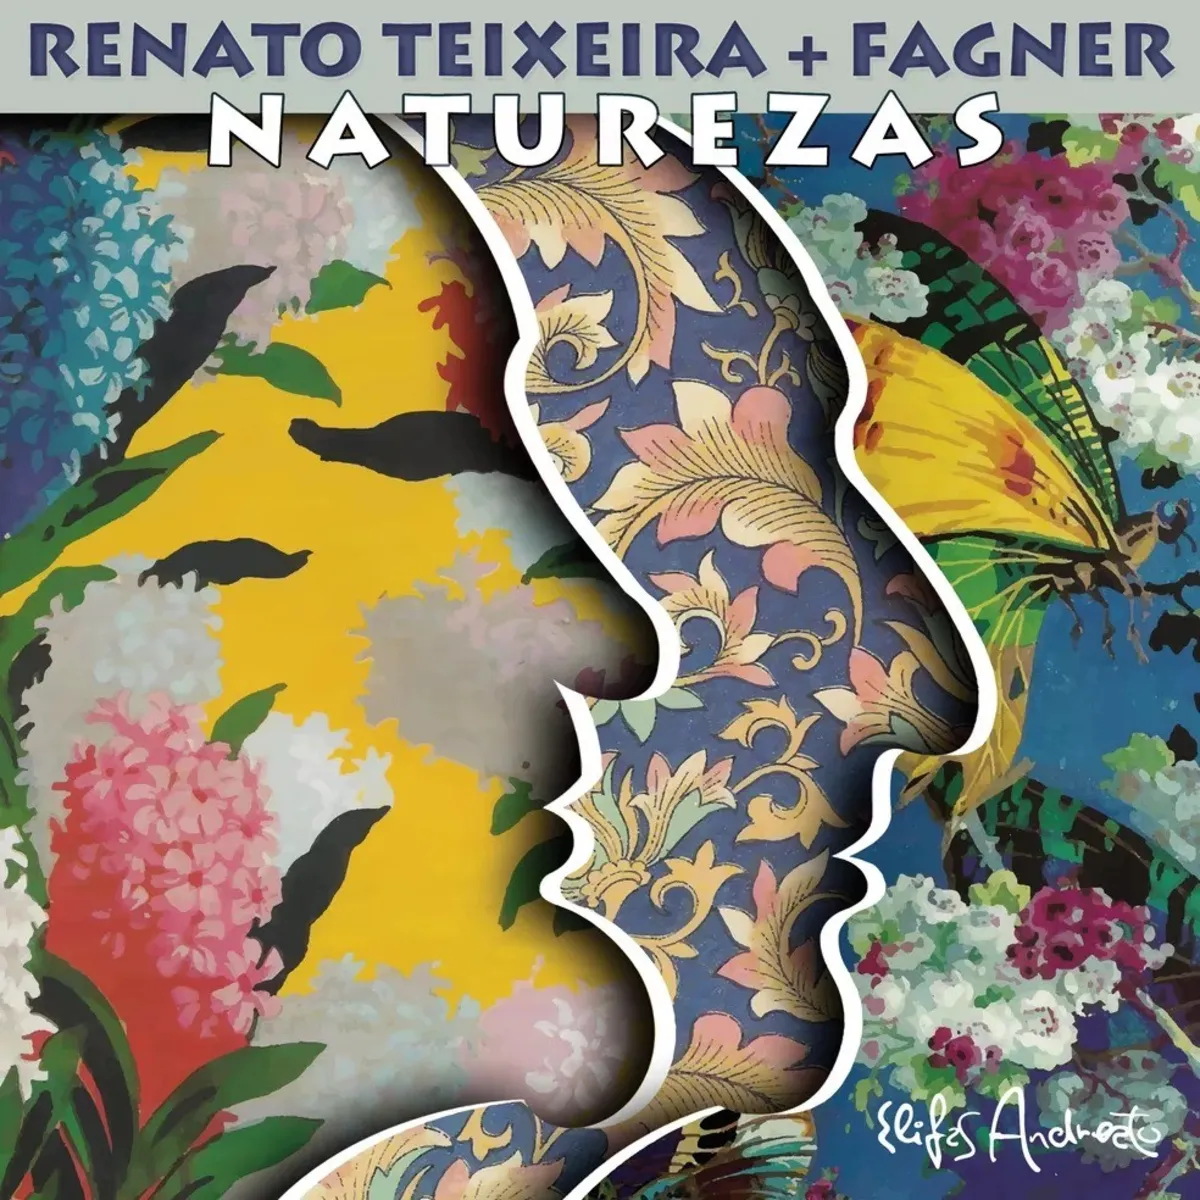 Álbum "Naturezas" reúne Fagner e Renato Teixeira